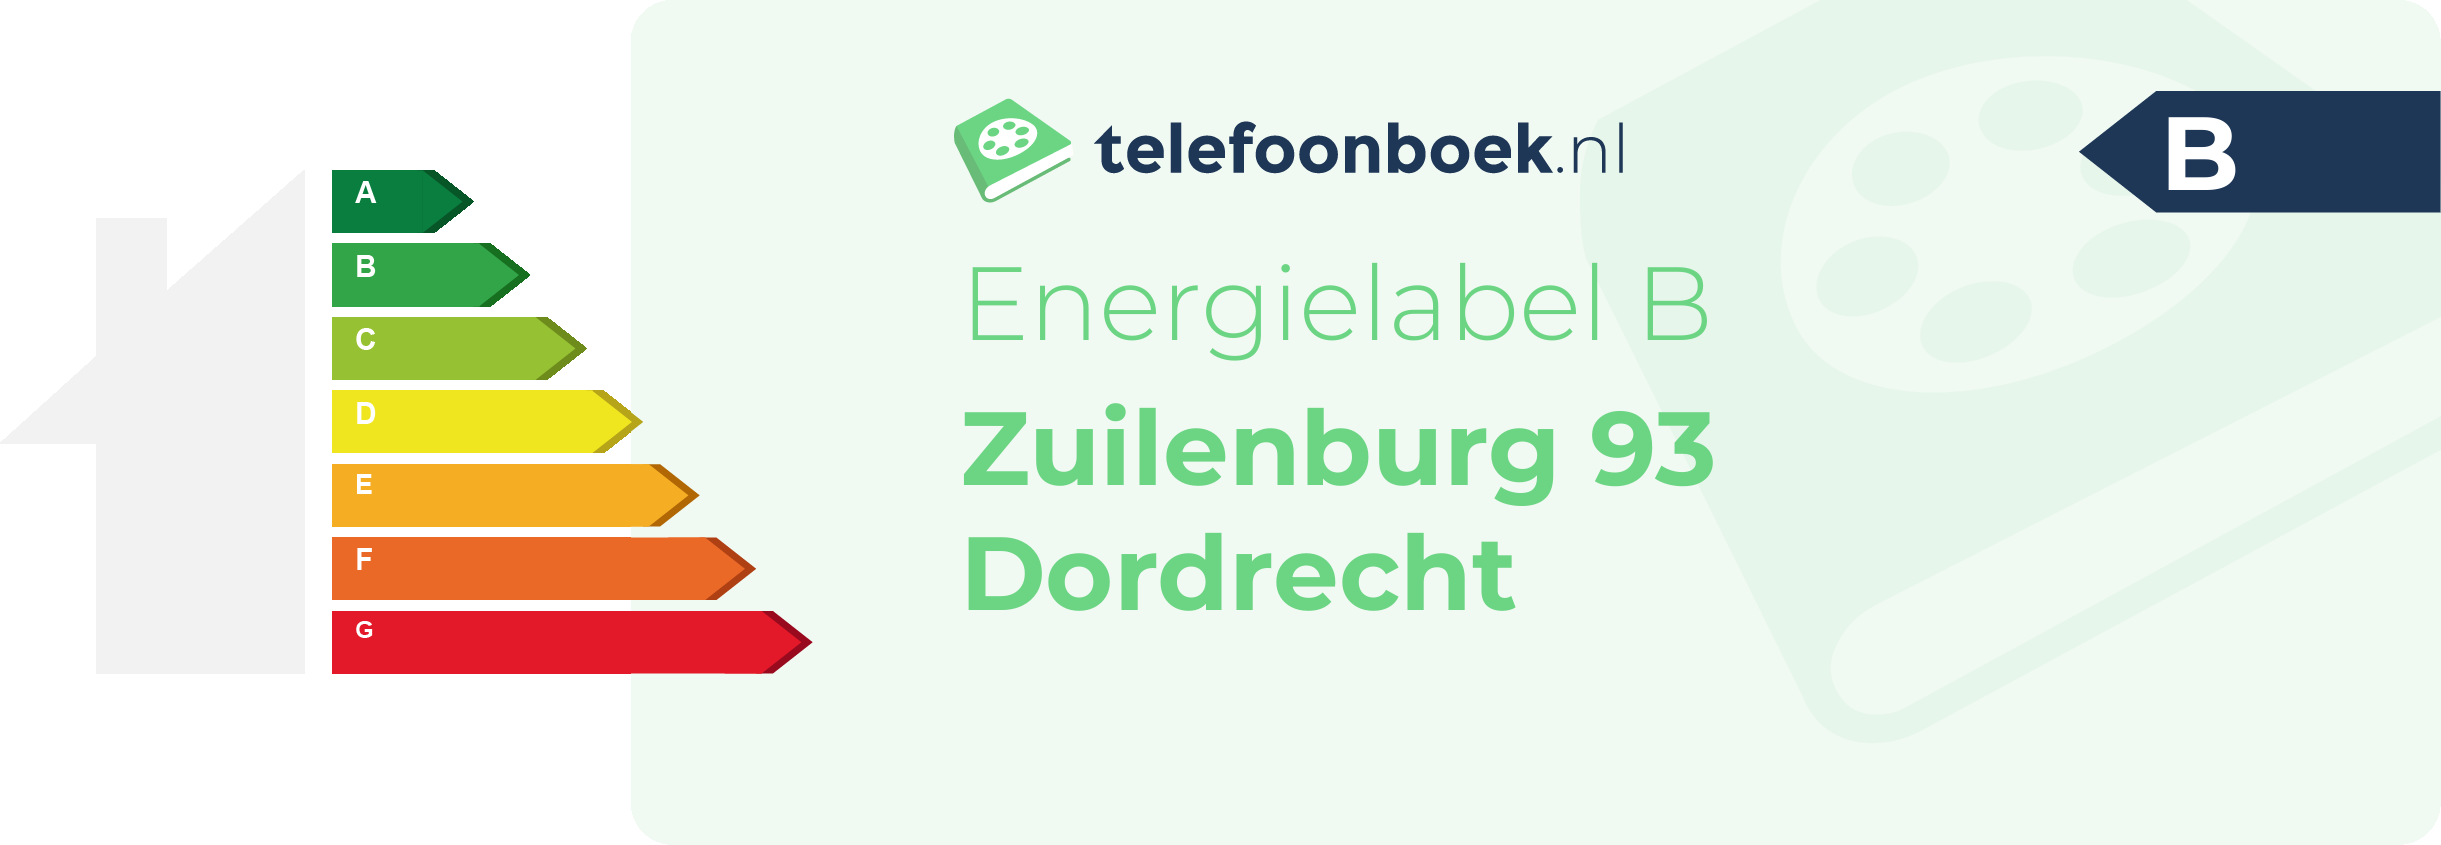 Energielabel Zuilenburg 93 Dordrecht